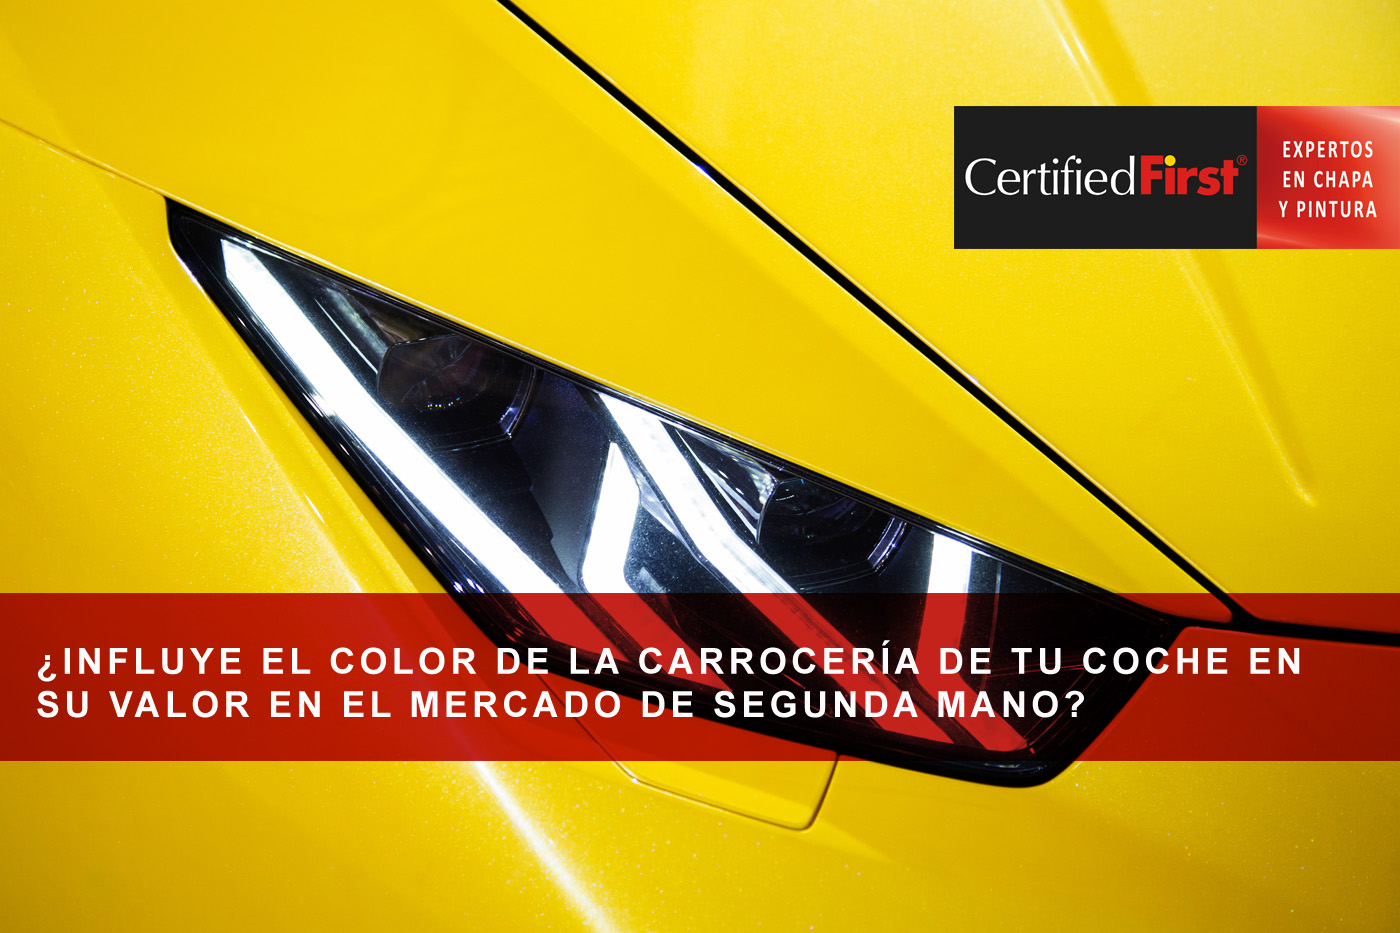 ¿Influye el color de la carrocería de tu coche en su valor en el mercado de segunda mano?